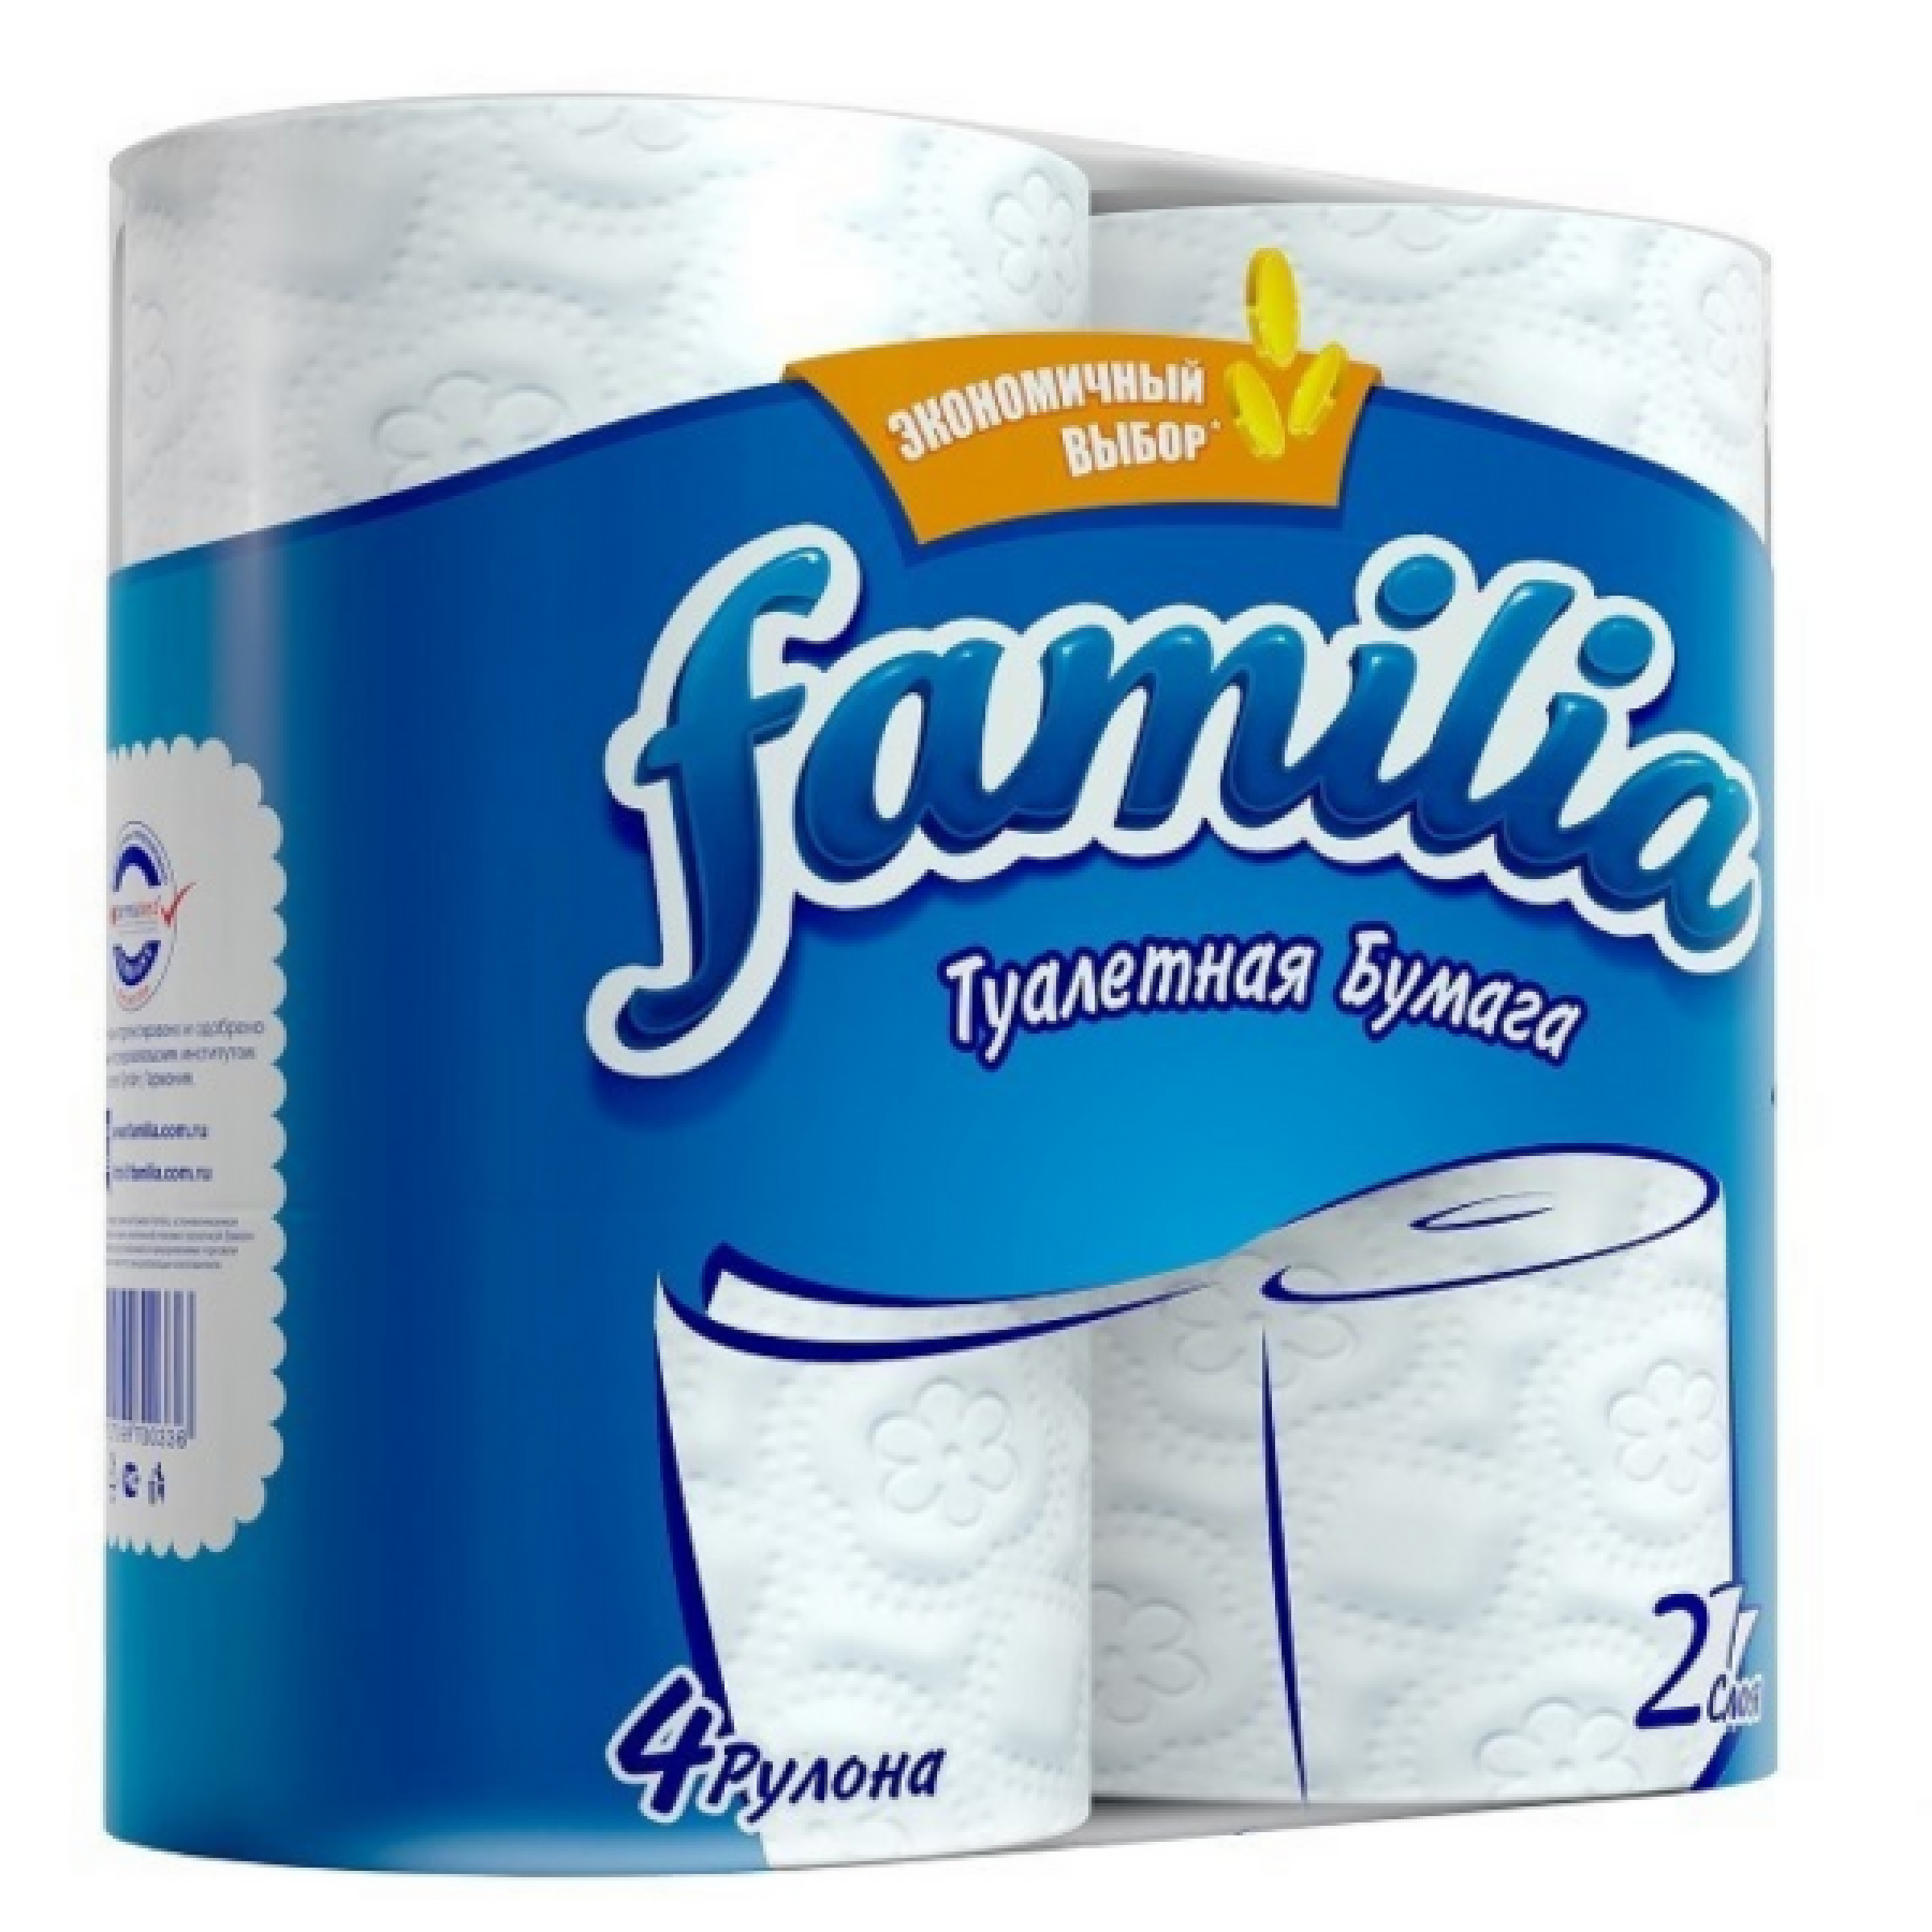 Туалетная бумага Familia Экономичный выбор двухслойная, 4 рулона